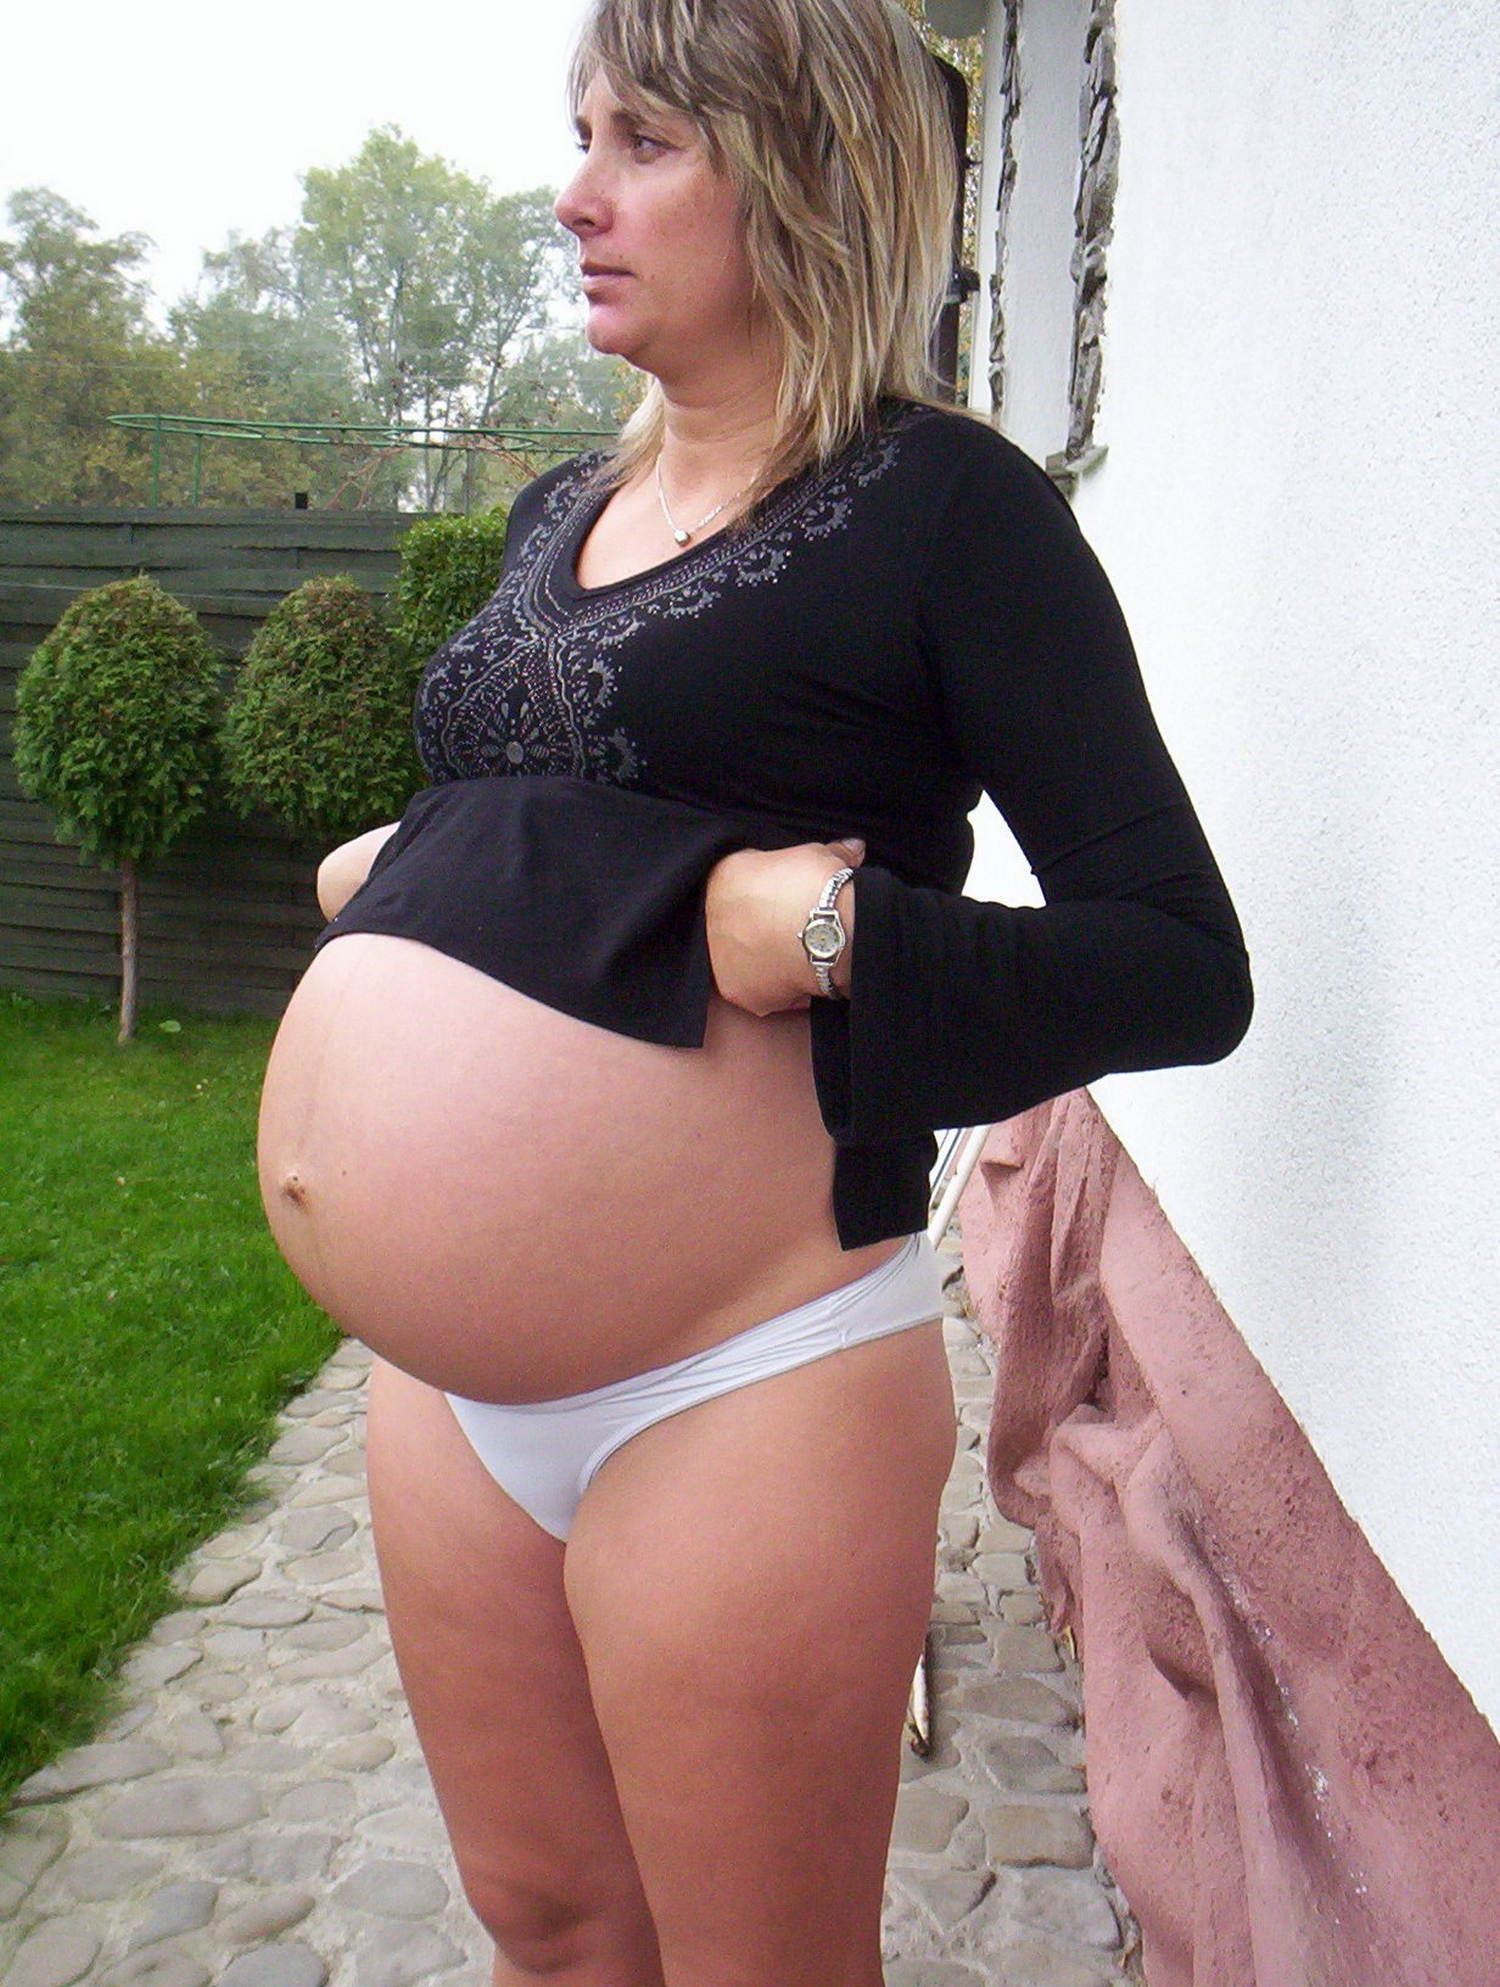 Хахаль трахает беременную жену в киску - 11